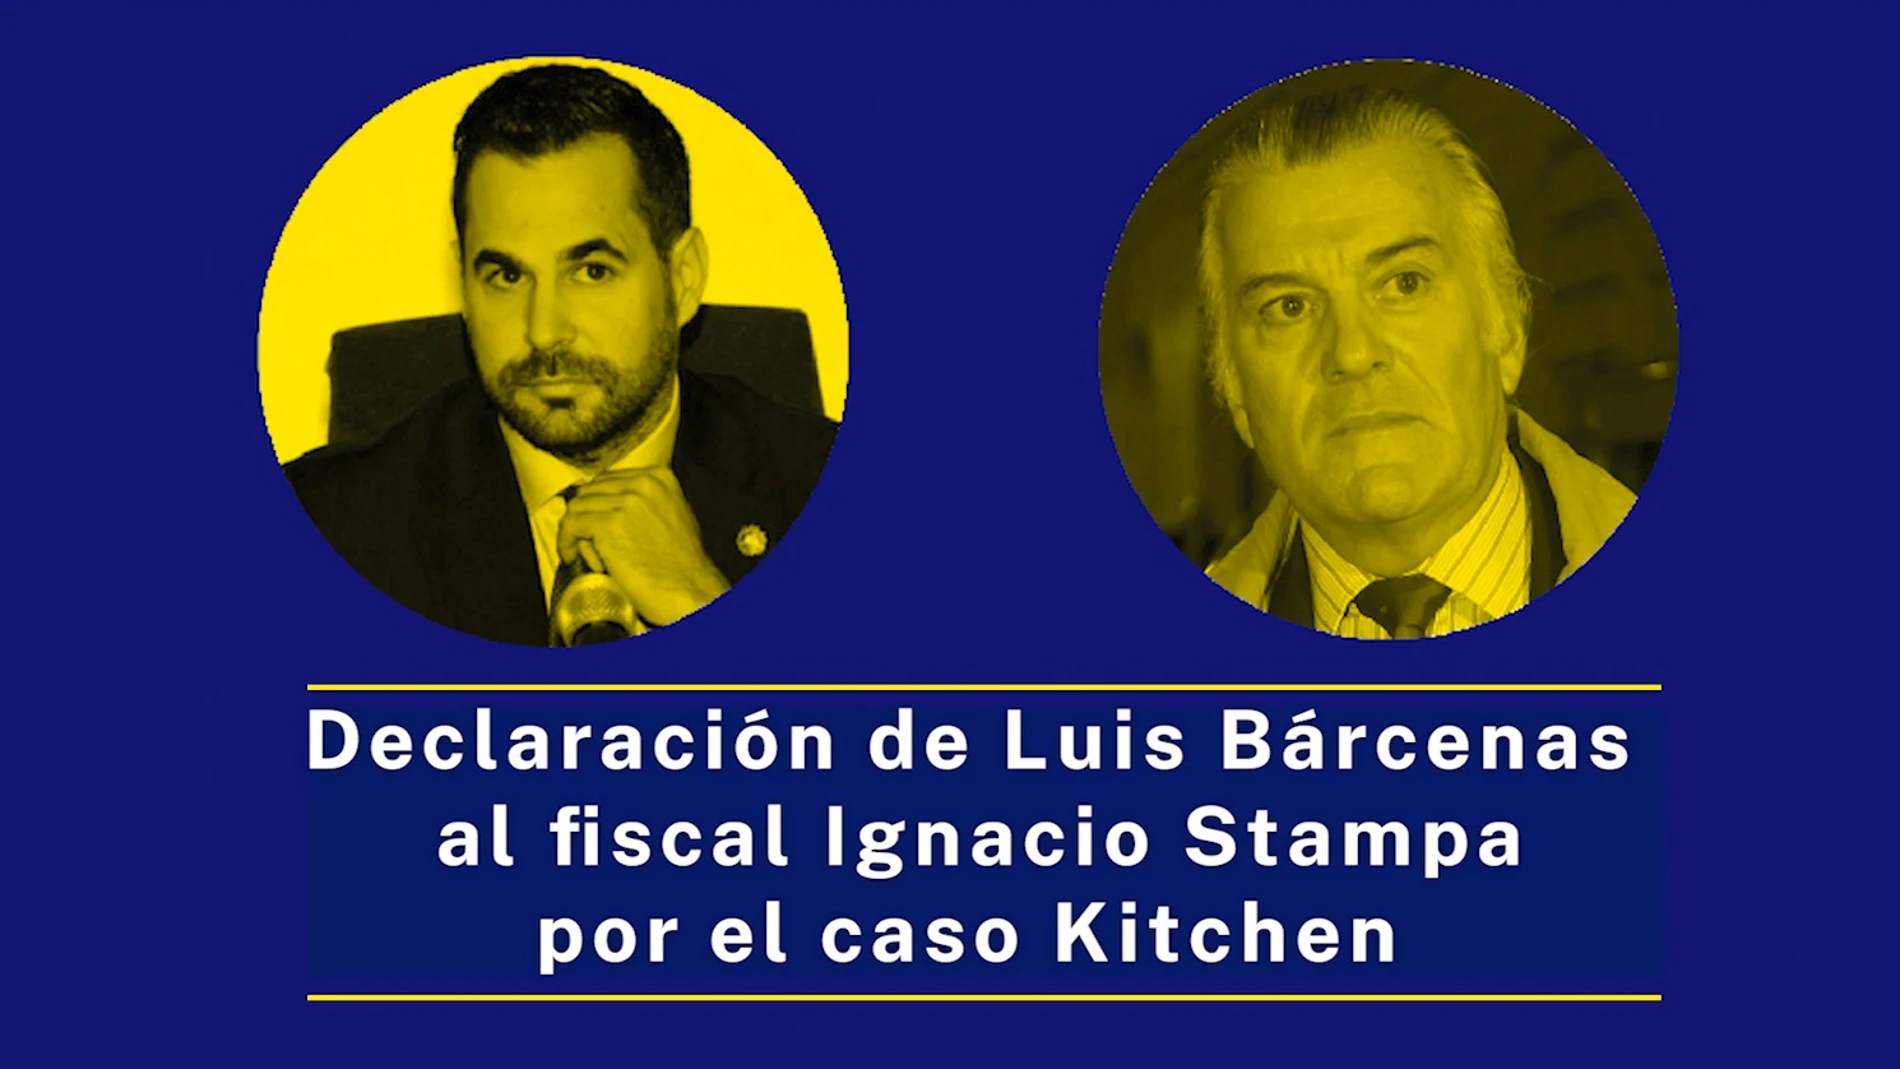 El fiscal Ignacio Stampa interroga a Luis Bárcenas en "Kitchen"